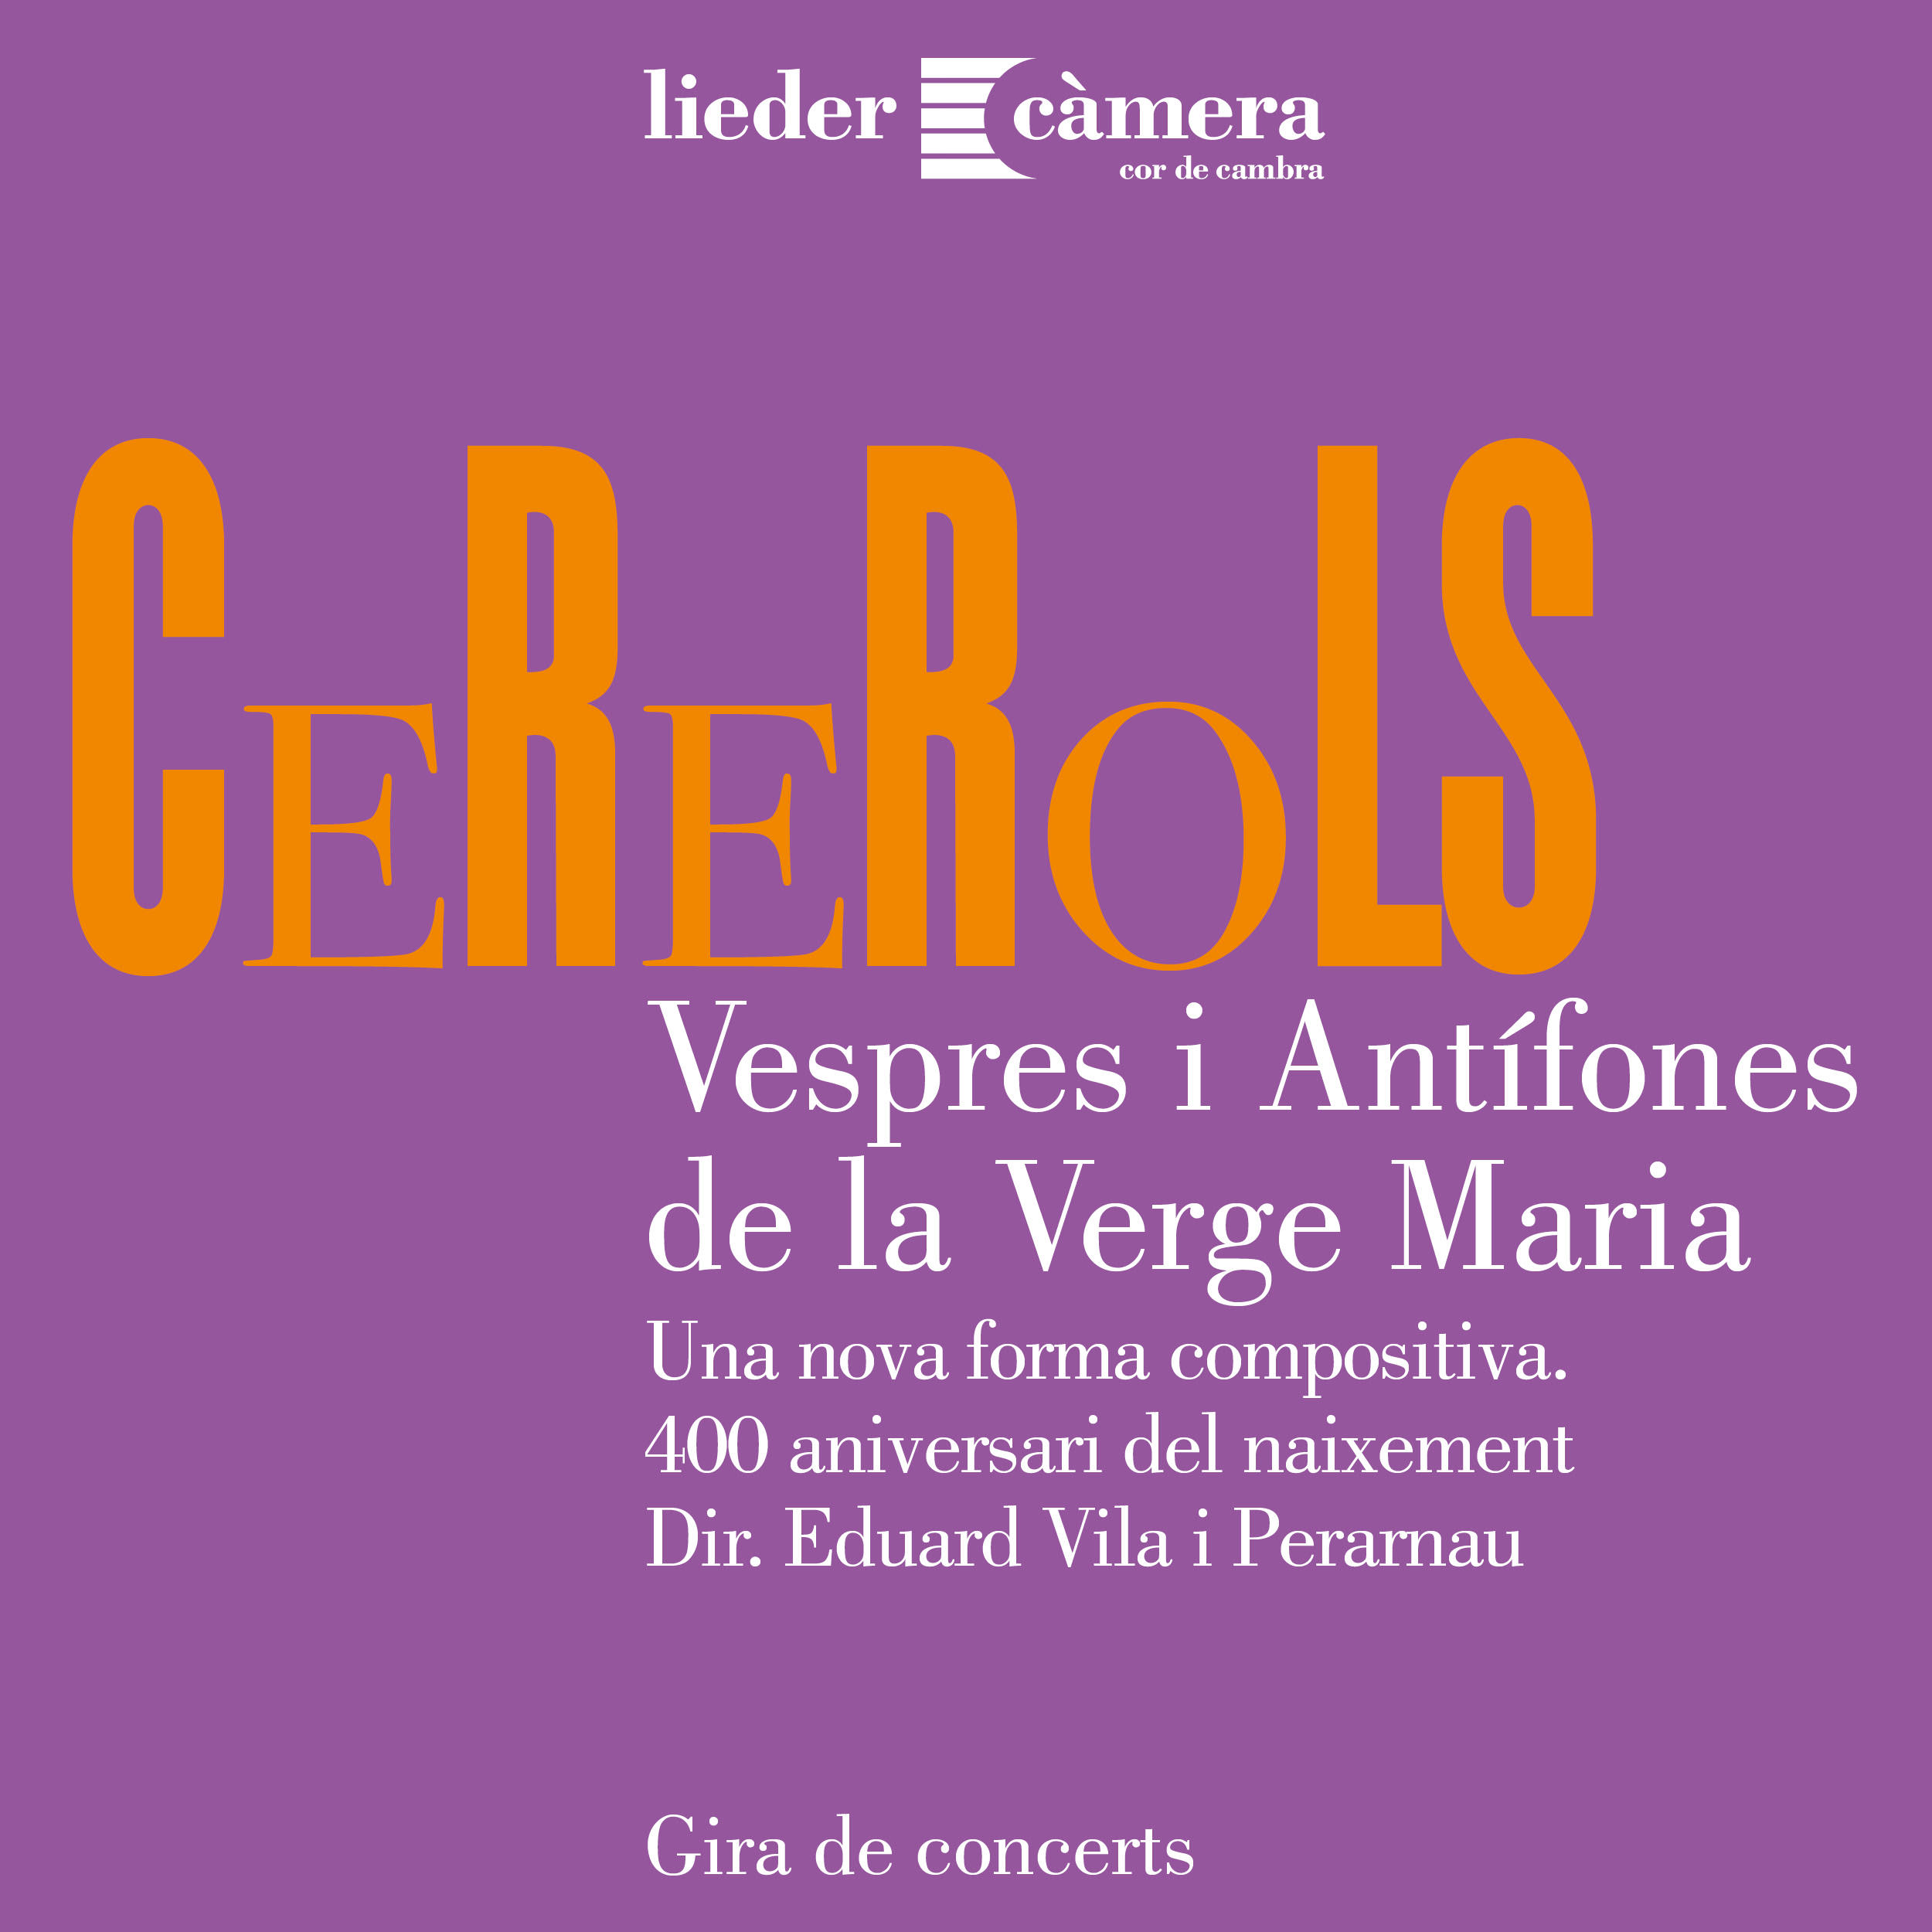 400 aniversari Joan Cererols